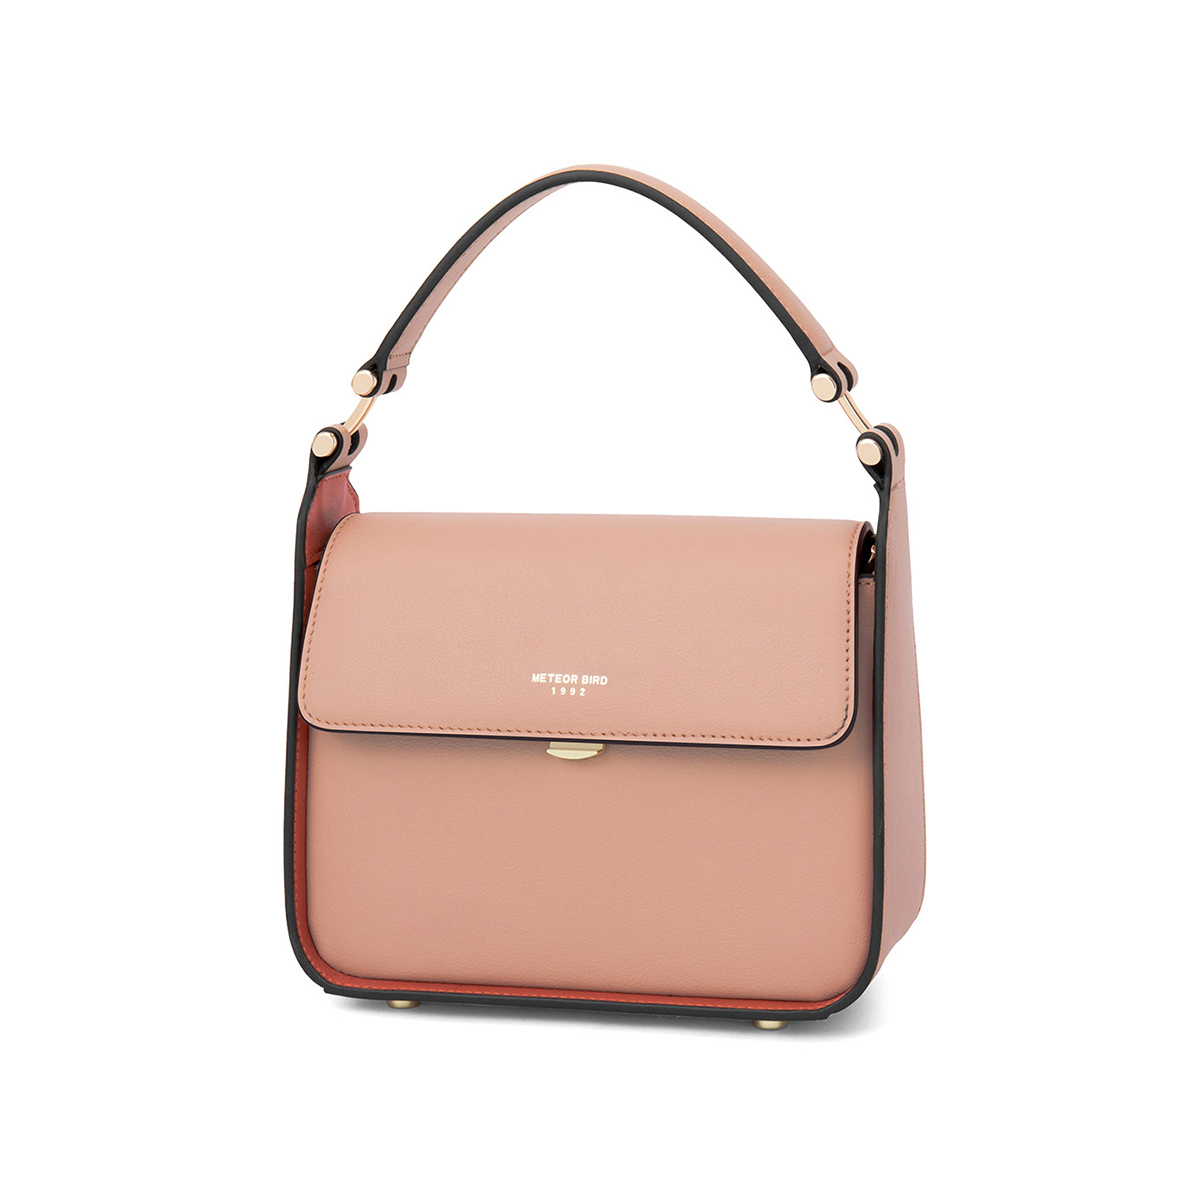 146bag:Girls Single Shoulder Messenger Bags Custom Brand Logo Small Fresh Style Female Handbags